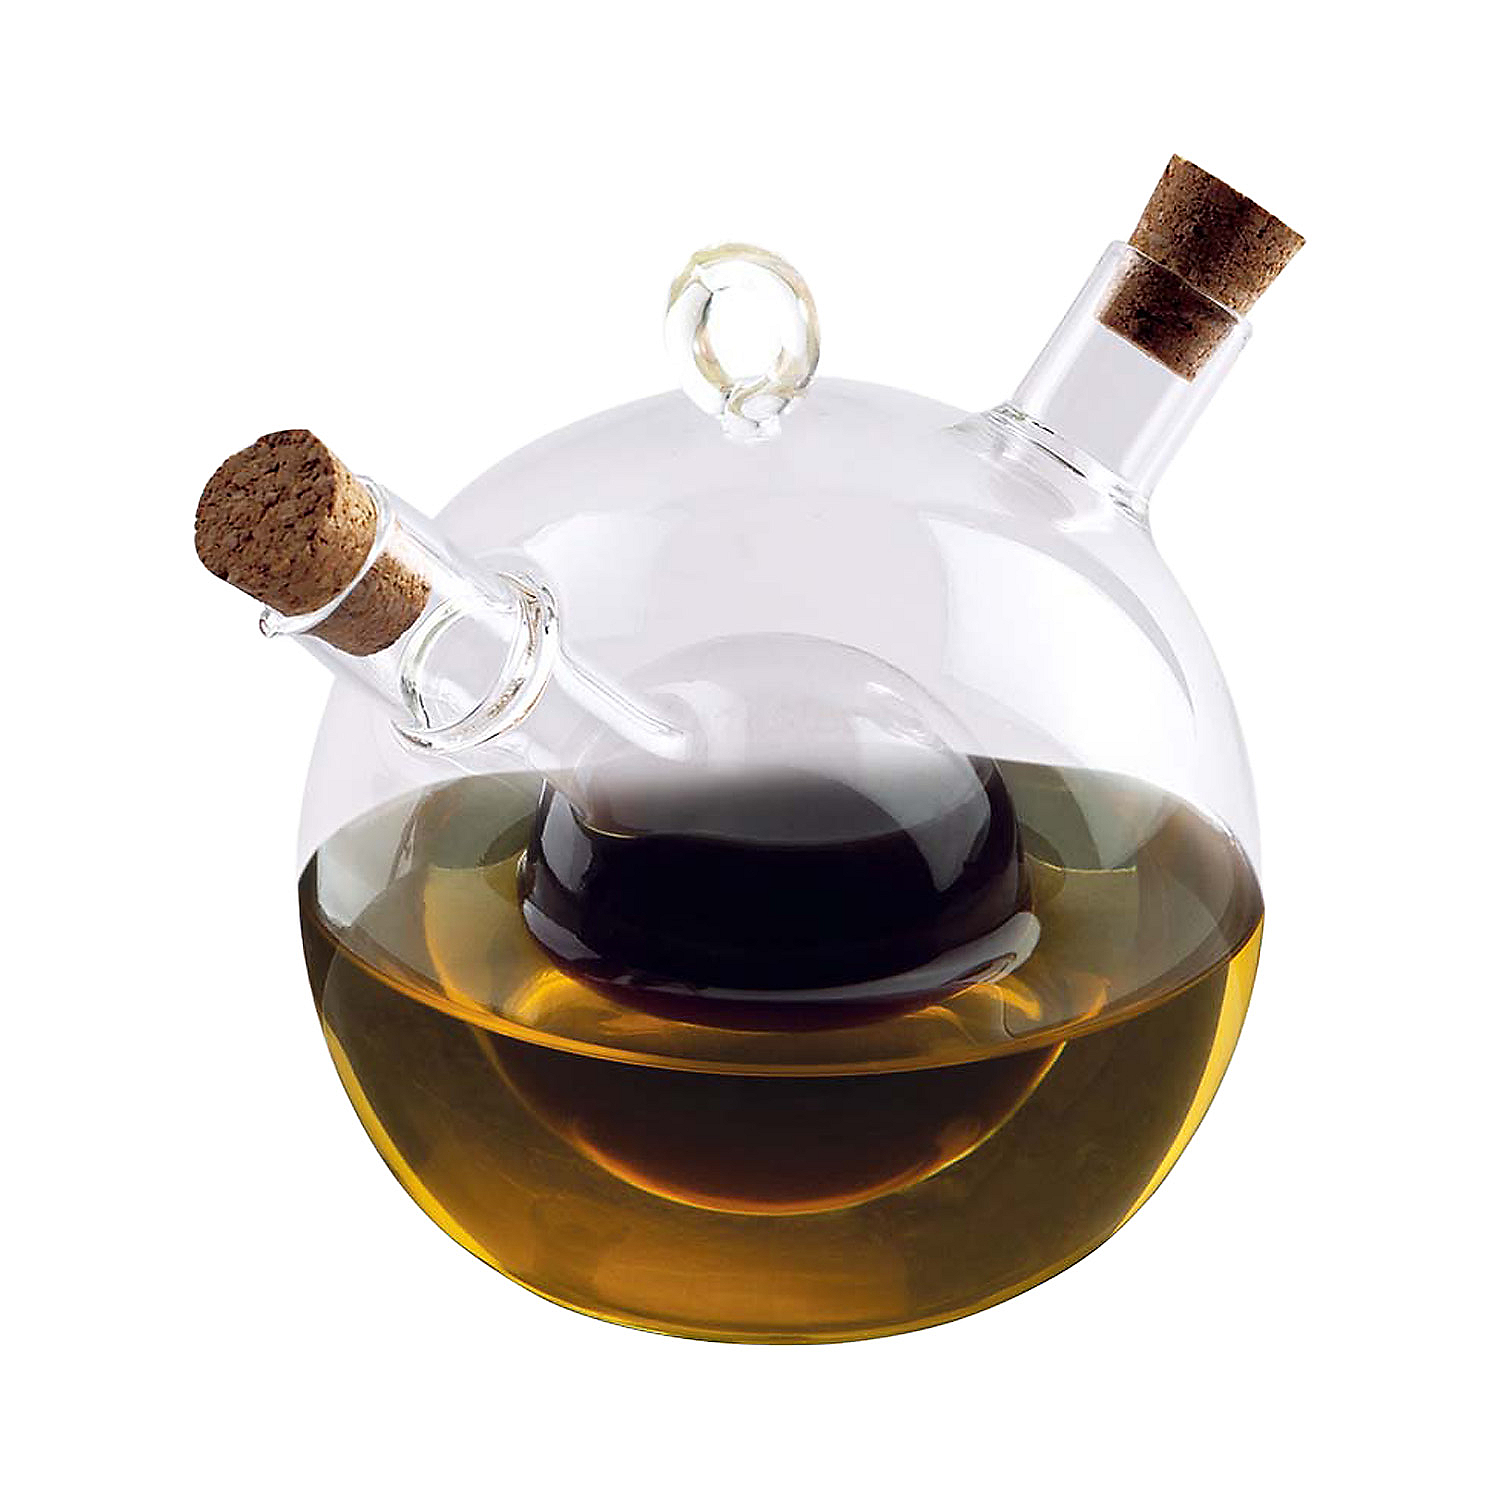 Butelka do oliwy / oleju, 50 ml, 350 ml, 2 w 1, szklana